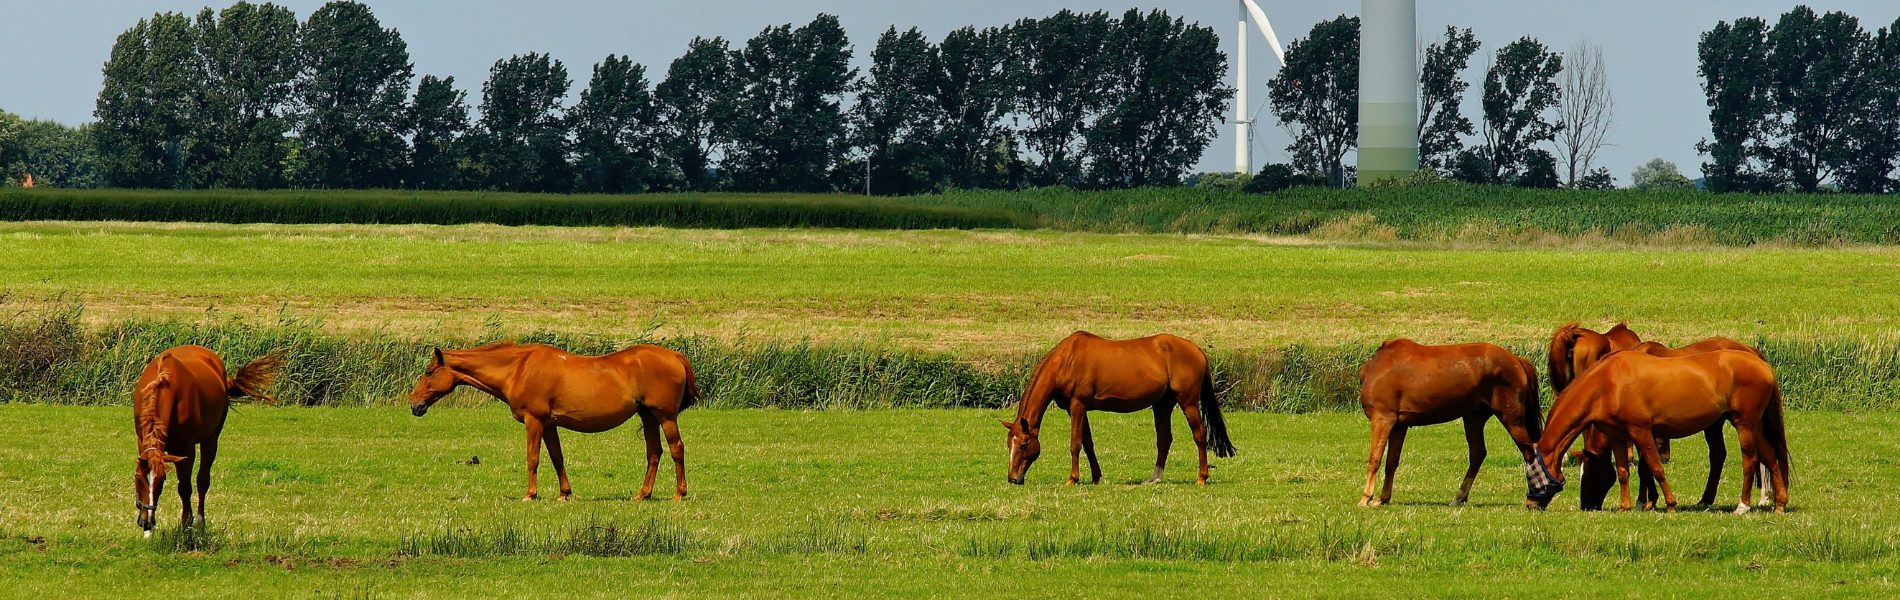 paardenarts.nl-paardenvoeding-ruwvoer voor alle paarden-paarden in weiland 2